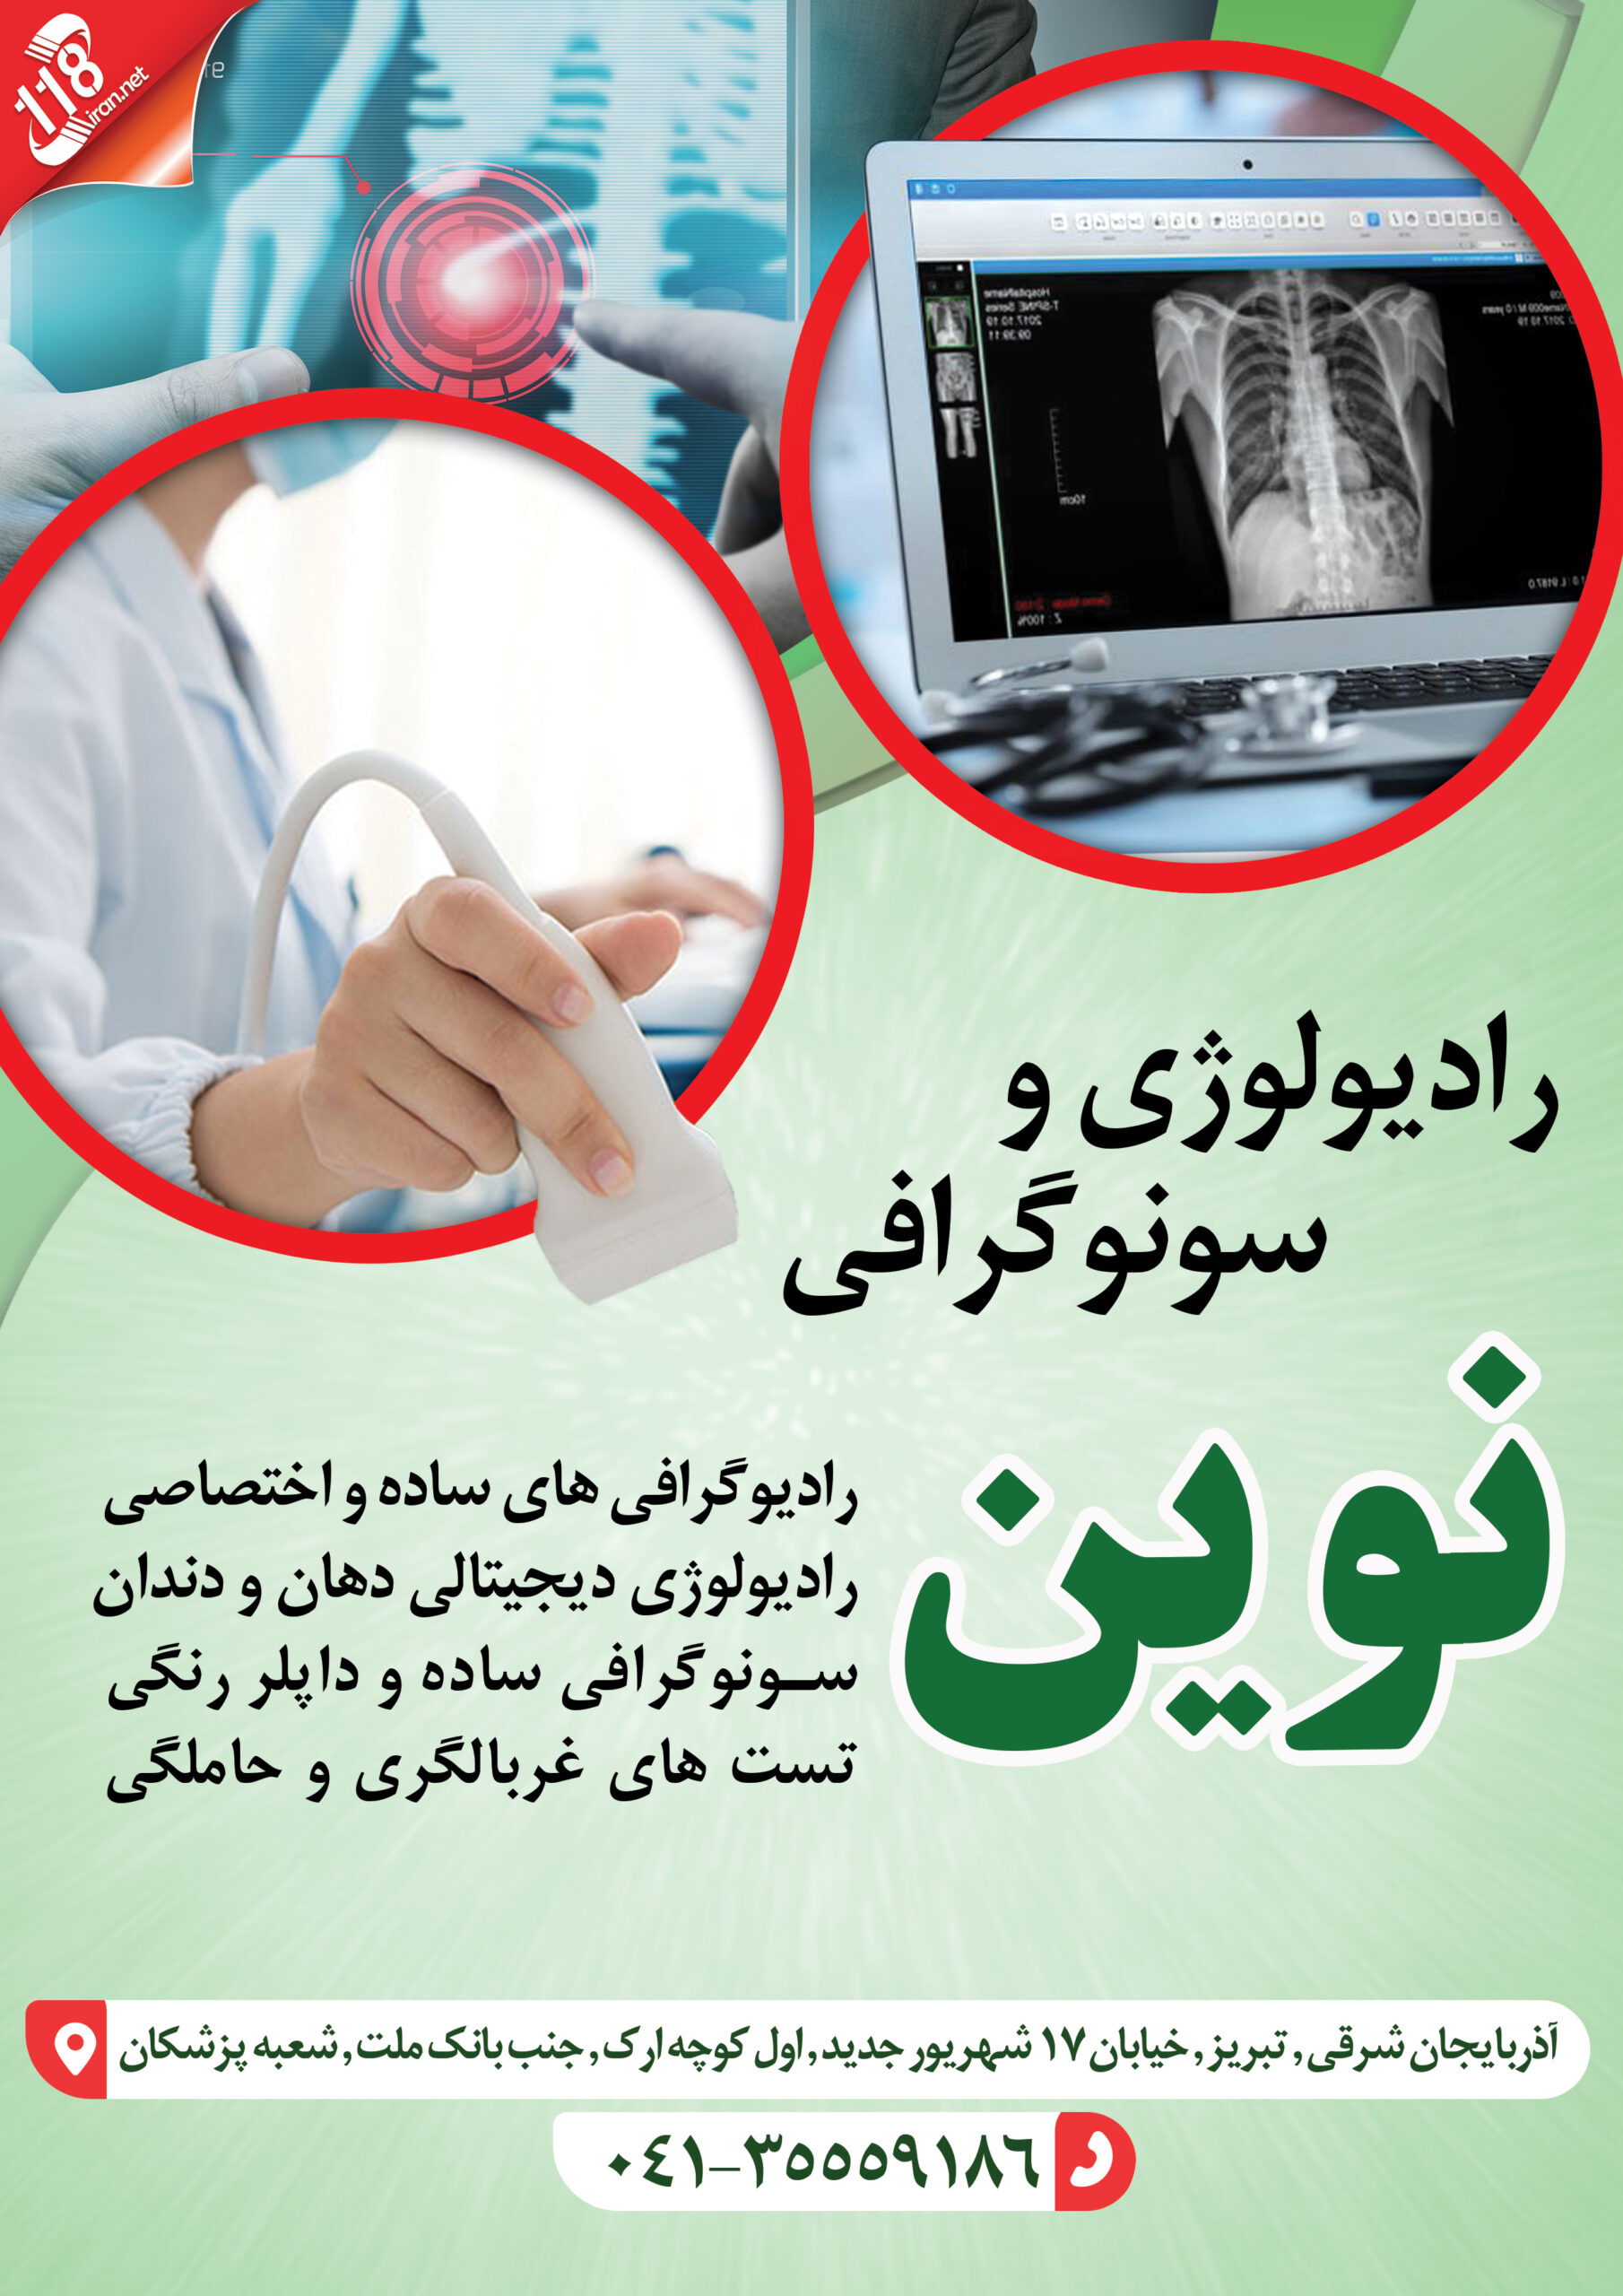  رادیولوژی و سونوگرافی نوین در تبریز 